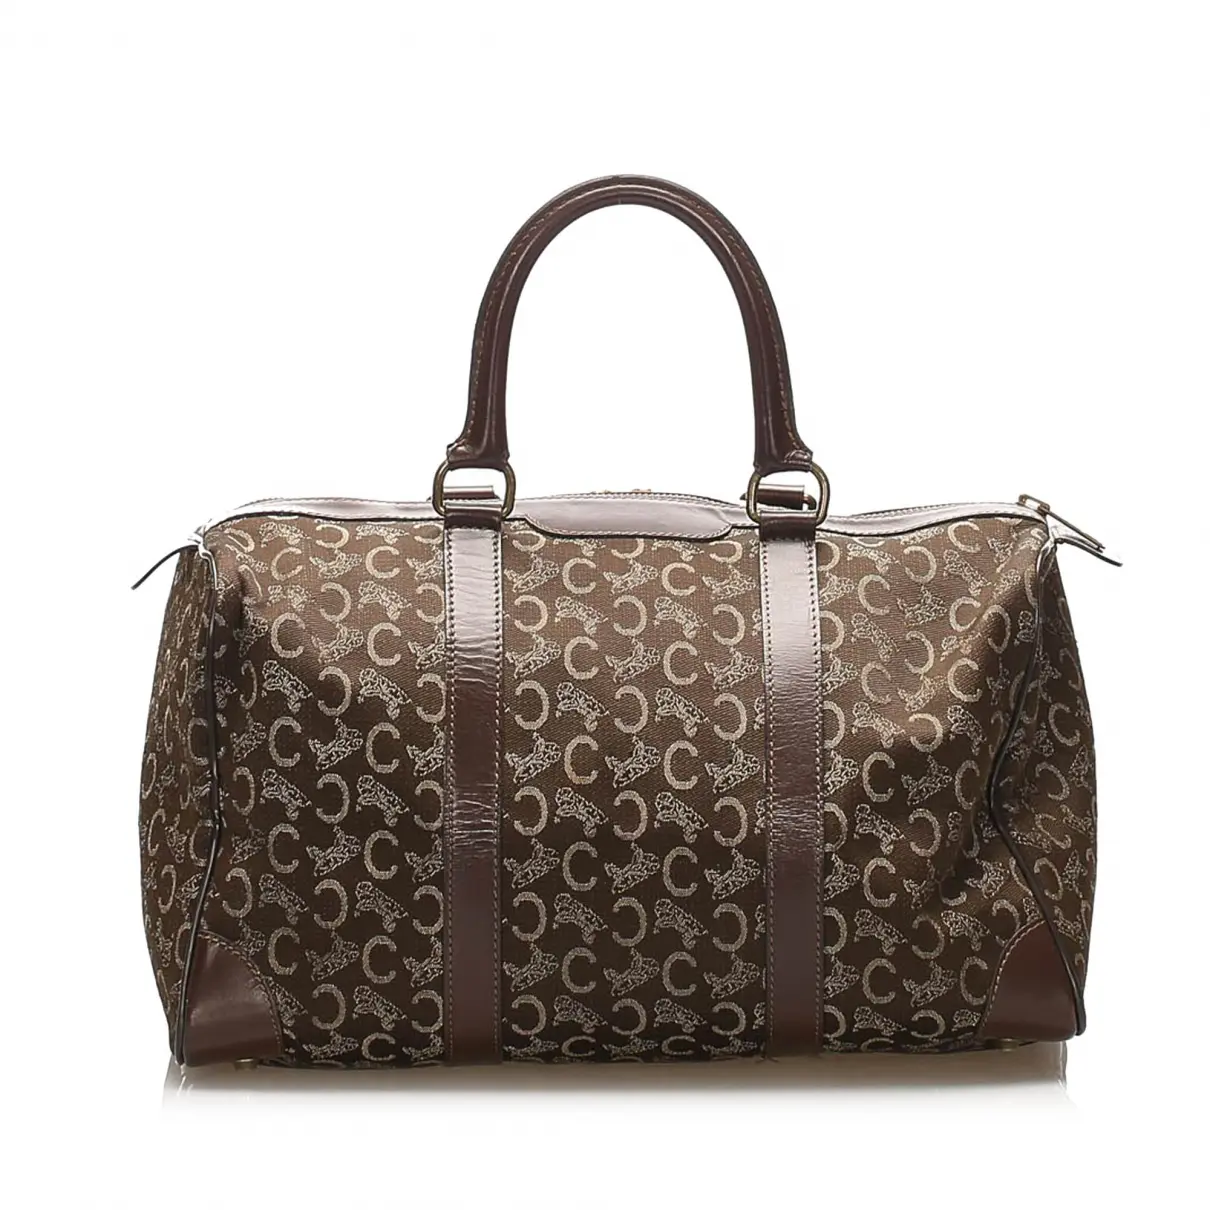 Luxury Celine Travel bags Women